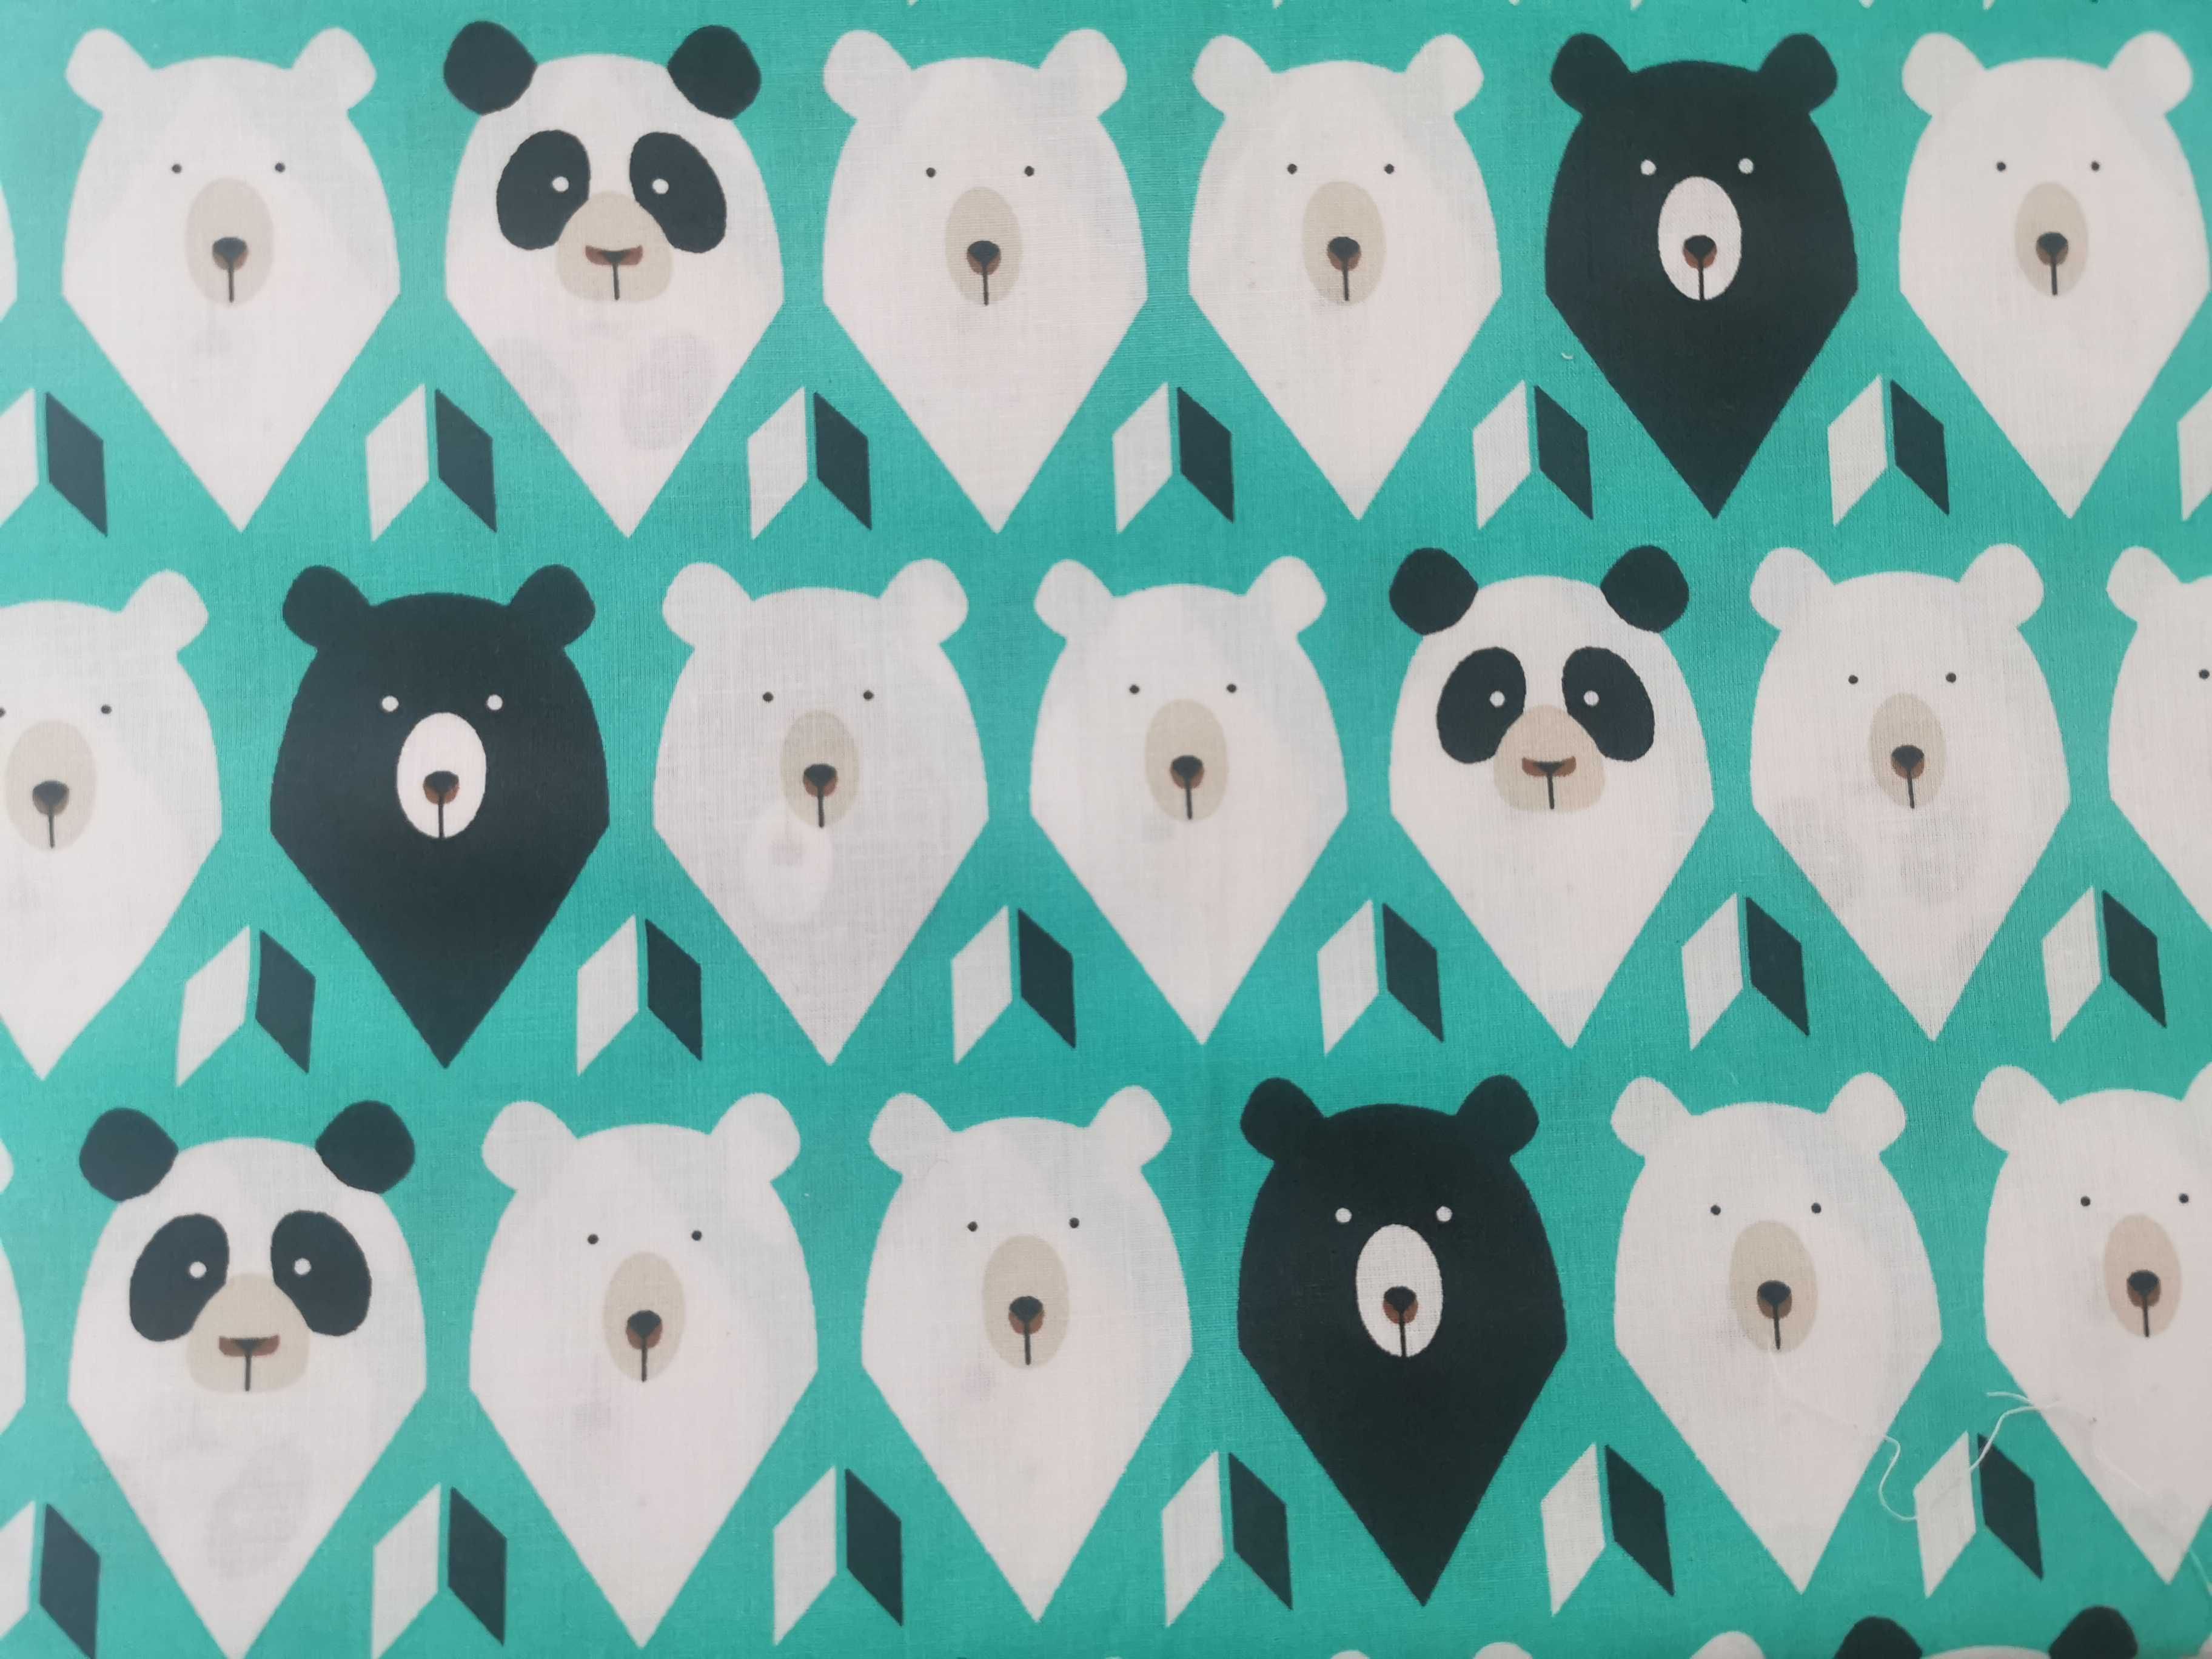 Bawełniany materiał do szycia 2mb w print panda i niedźwiadki